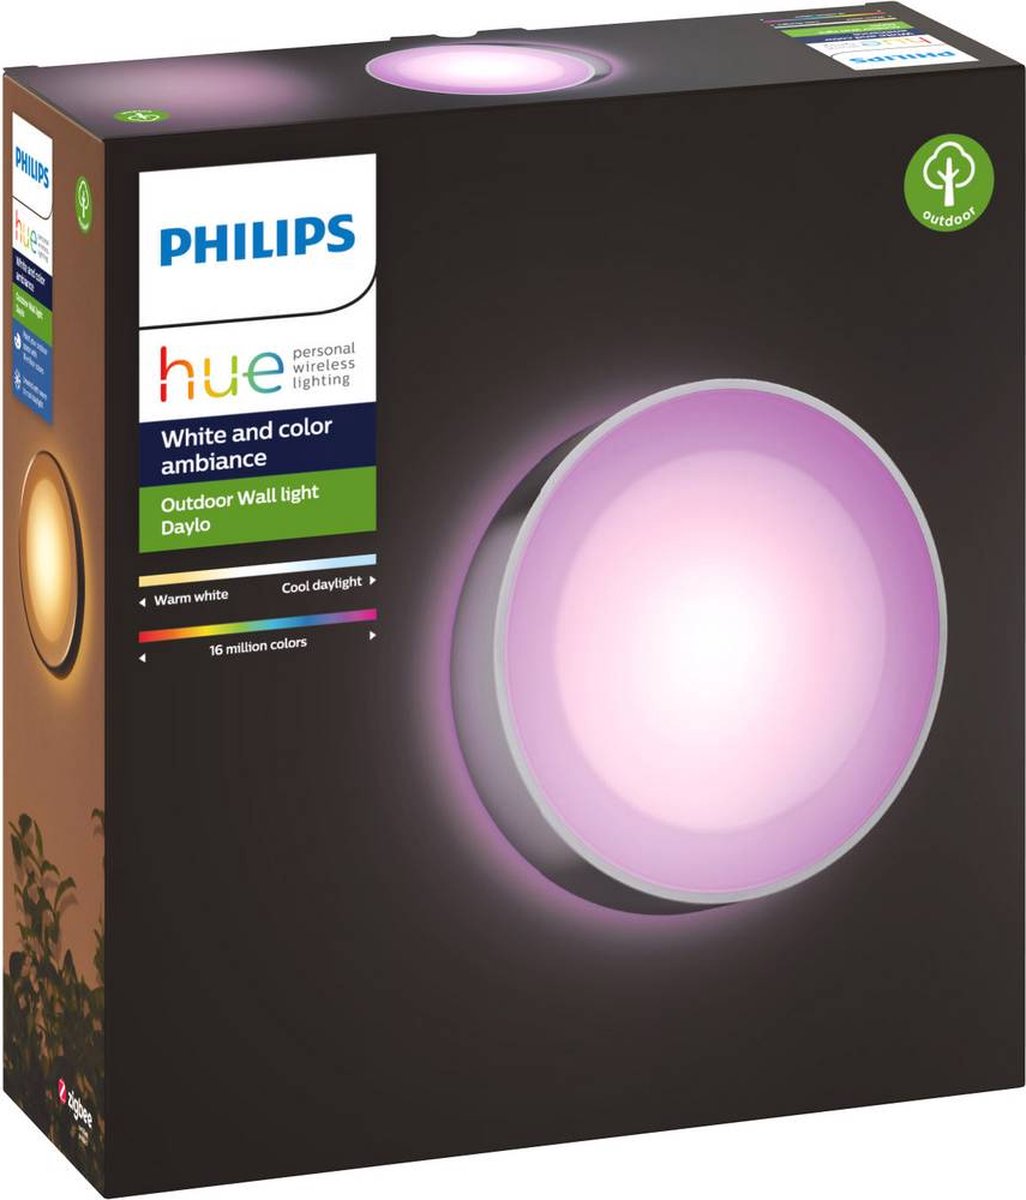 Philips Hue Daylo muurlamp - wit en gekleurd licht - roestvrij staal |  bol.com